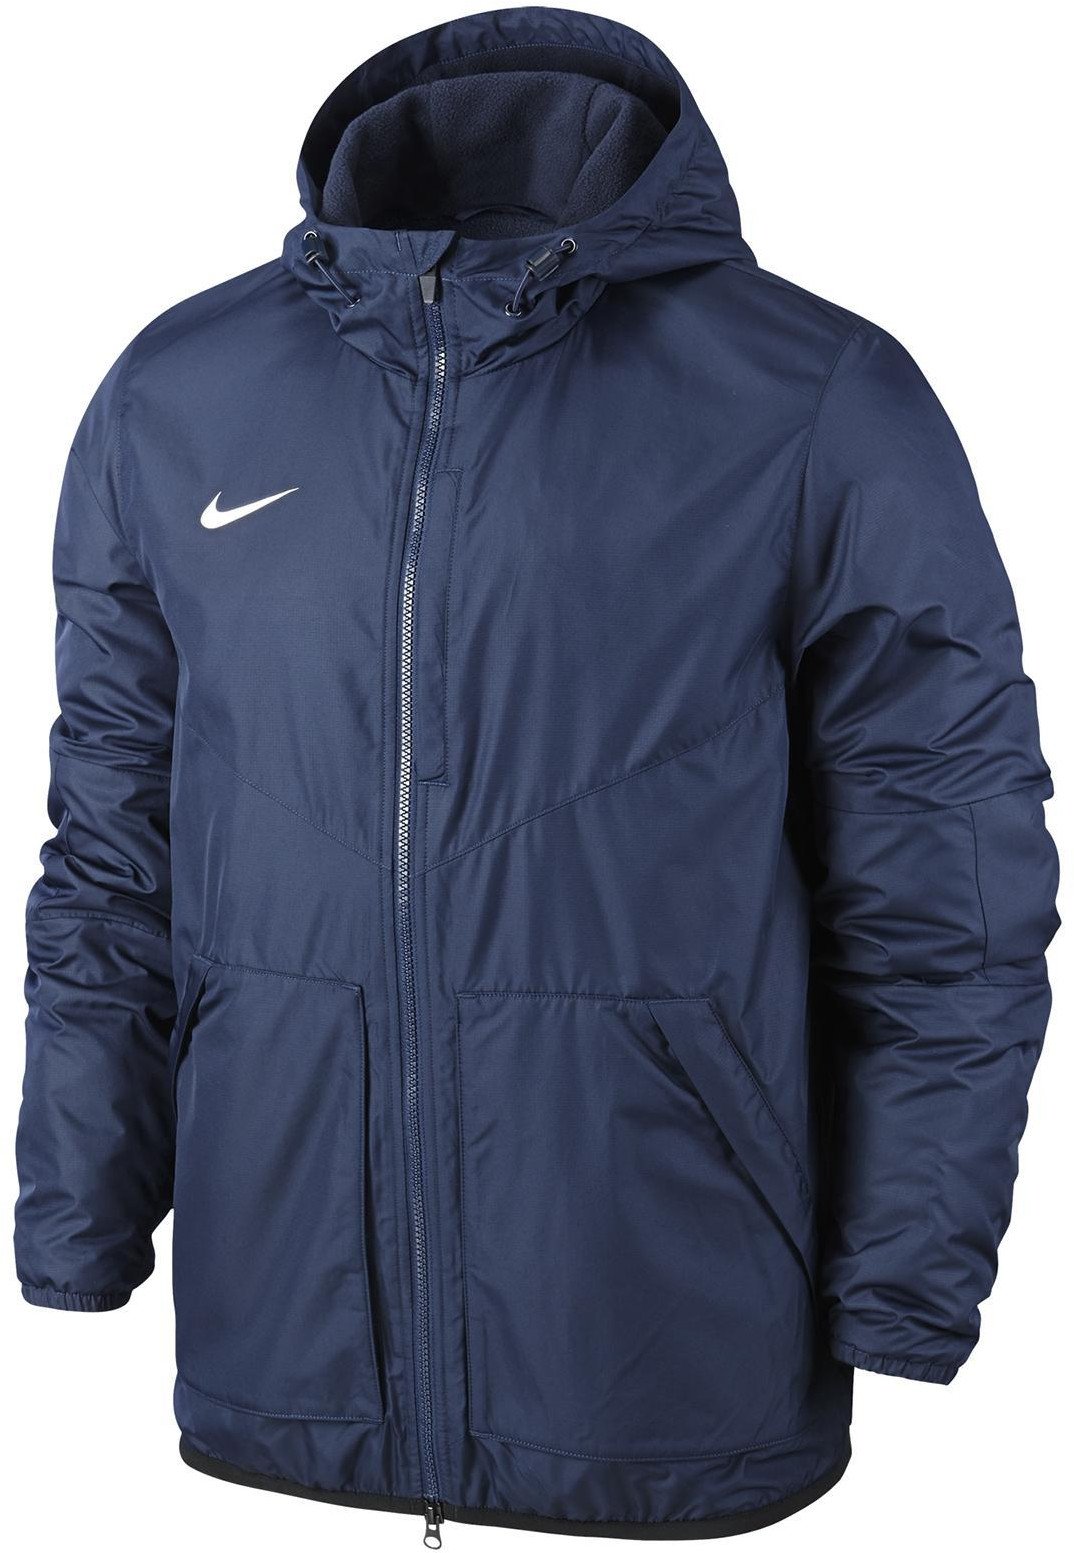 Pánská tréninková bunda s kapucí Nike Team Fall Jacket